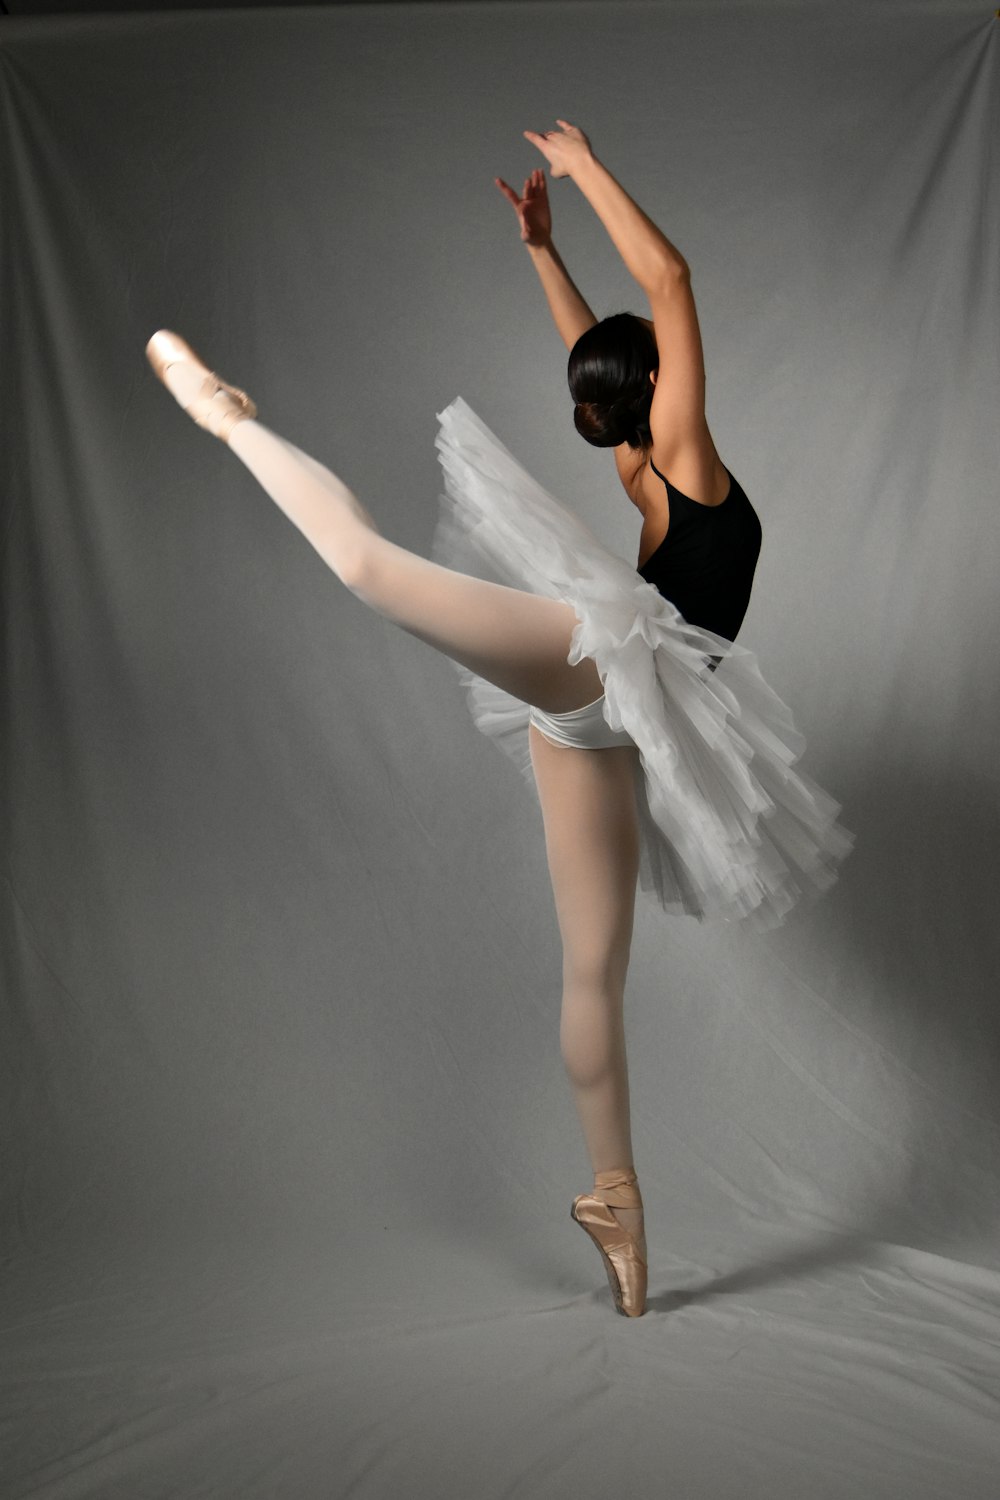 a ballerina in a black leotard and white tutu